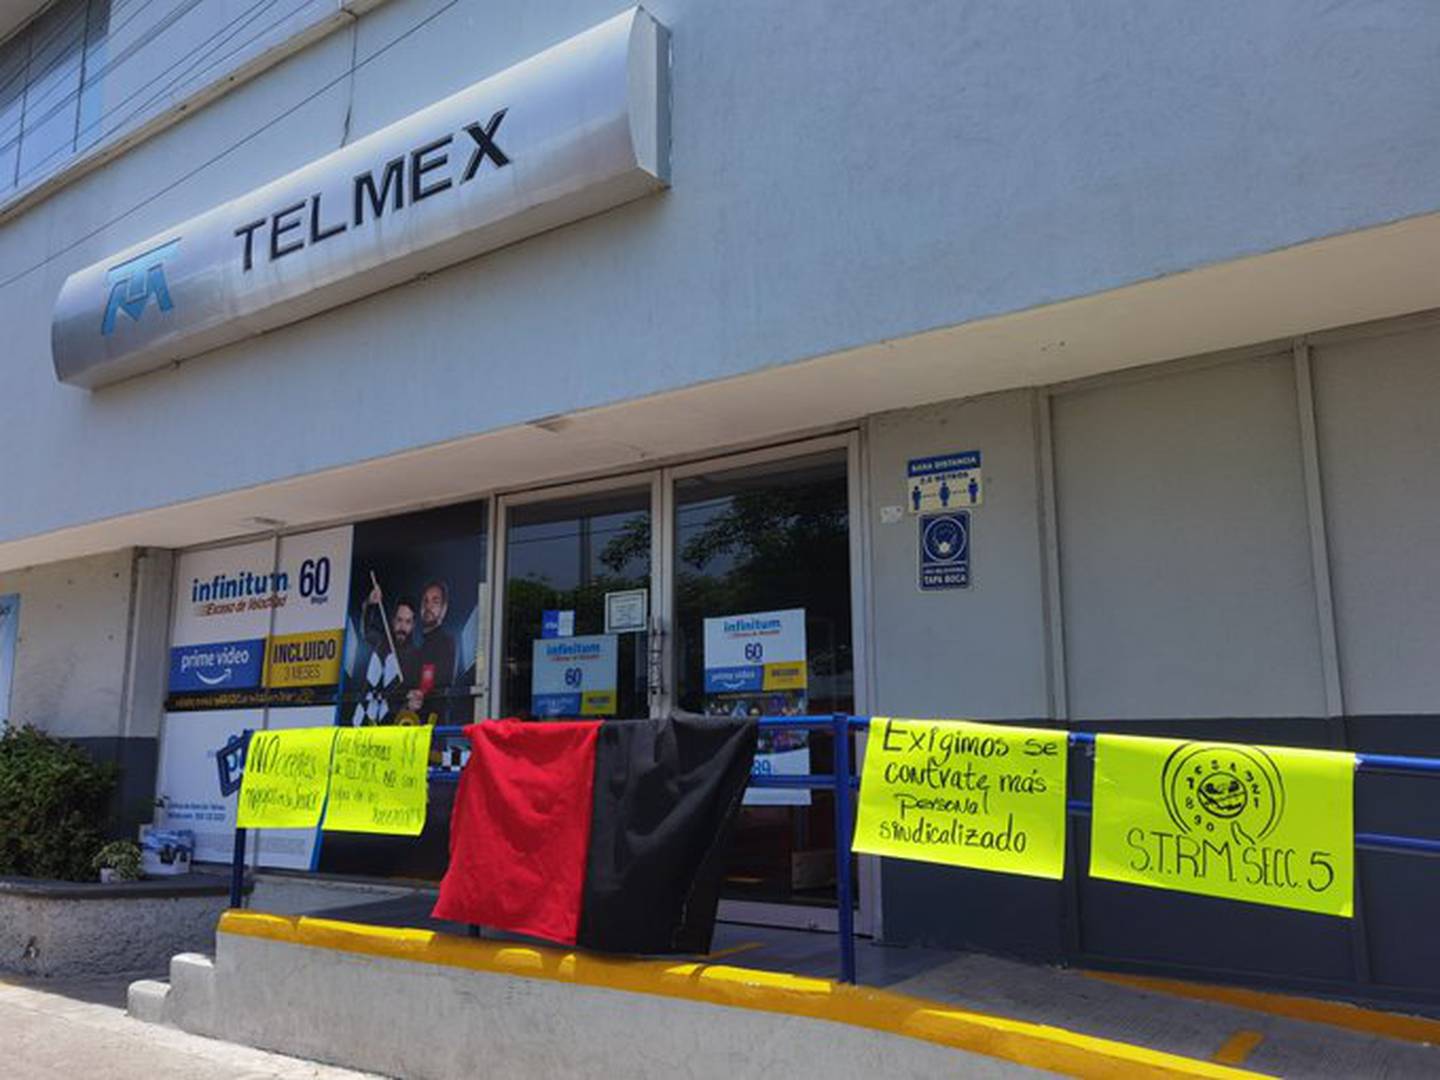 El sindicato de Telmex estalló la huelga a las 12:00 horas del jueves 21 de julio de 2022. (Cortesía: @SoyArmandoSup)